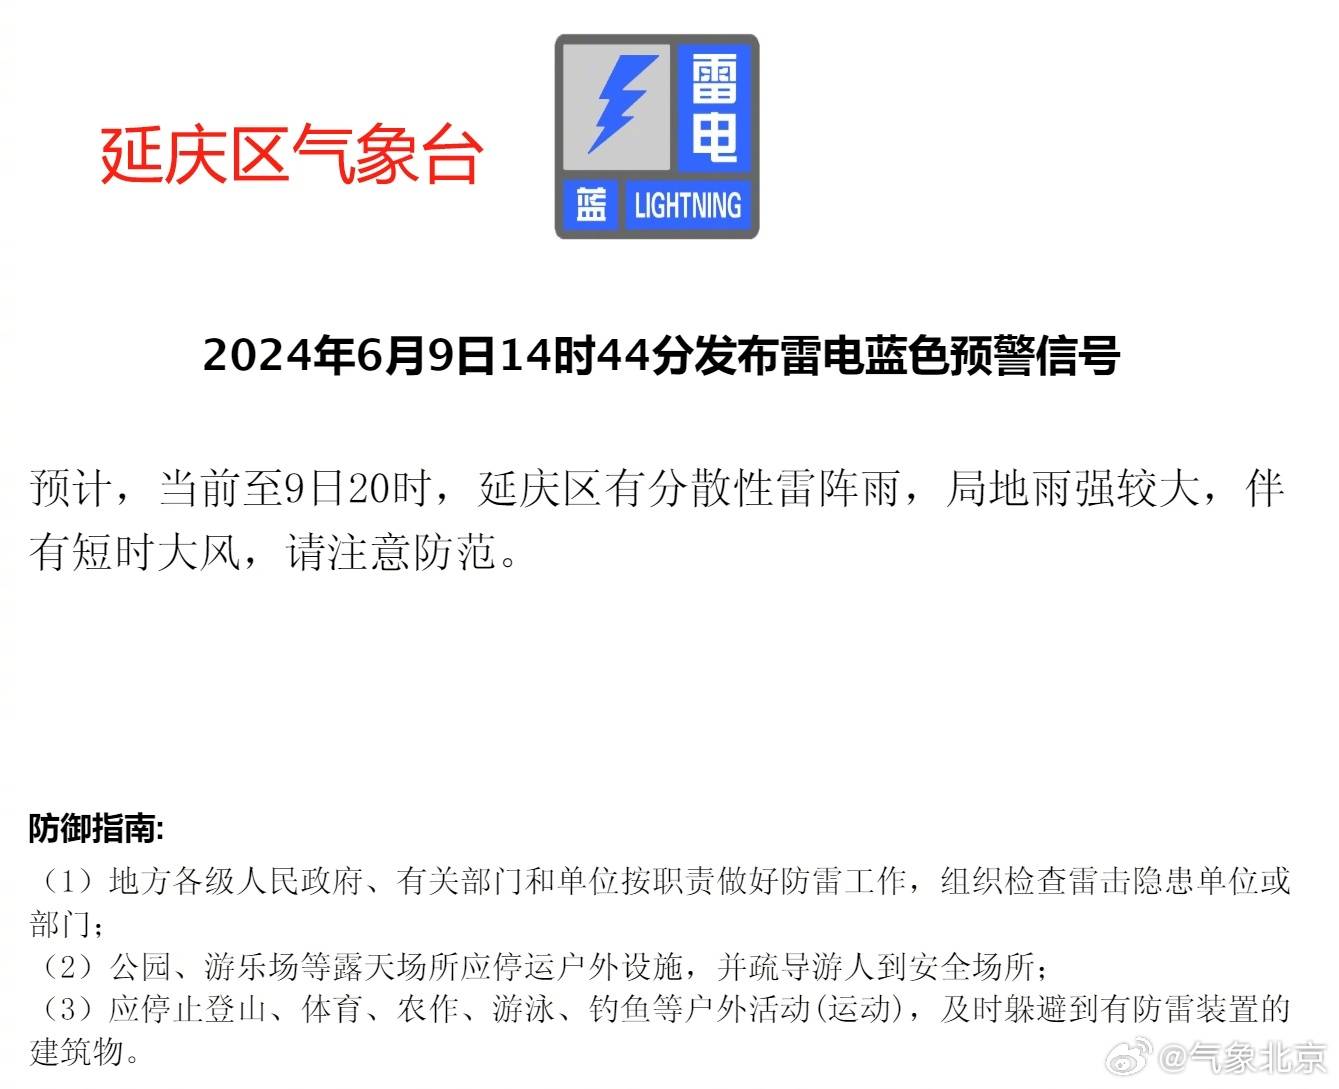 北京两区发布雷电蓝色预警信号 出行注意防雷避雨